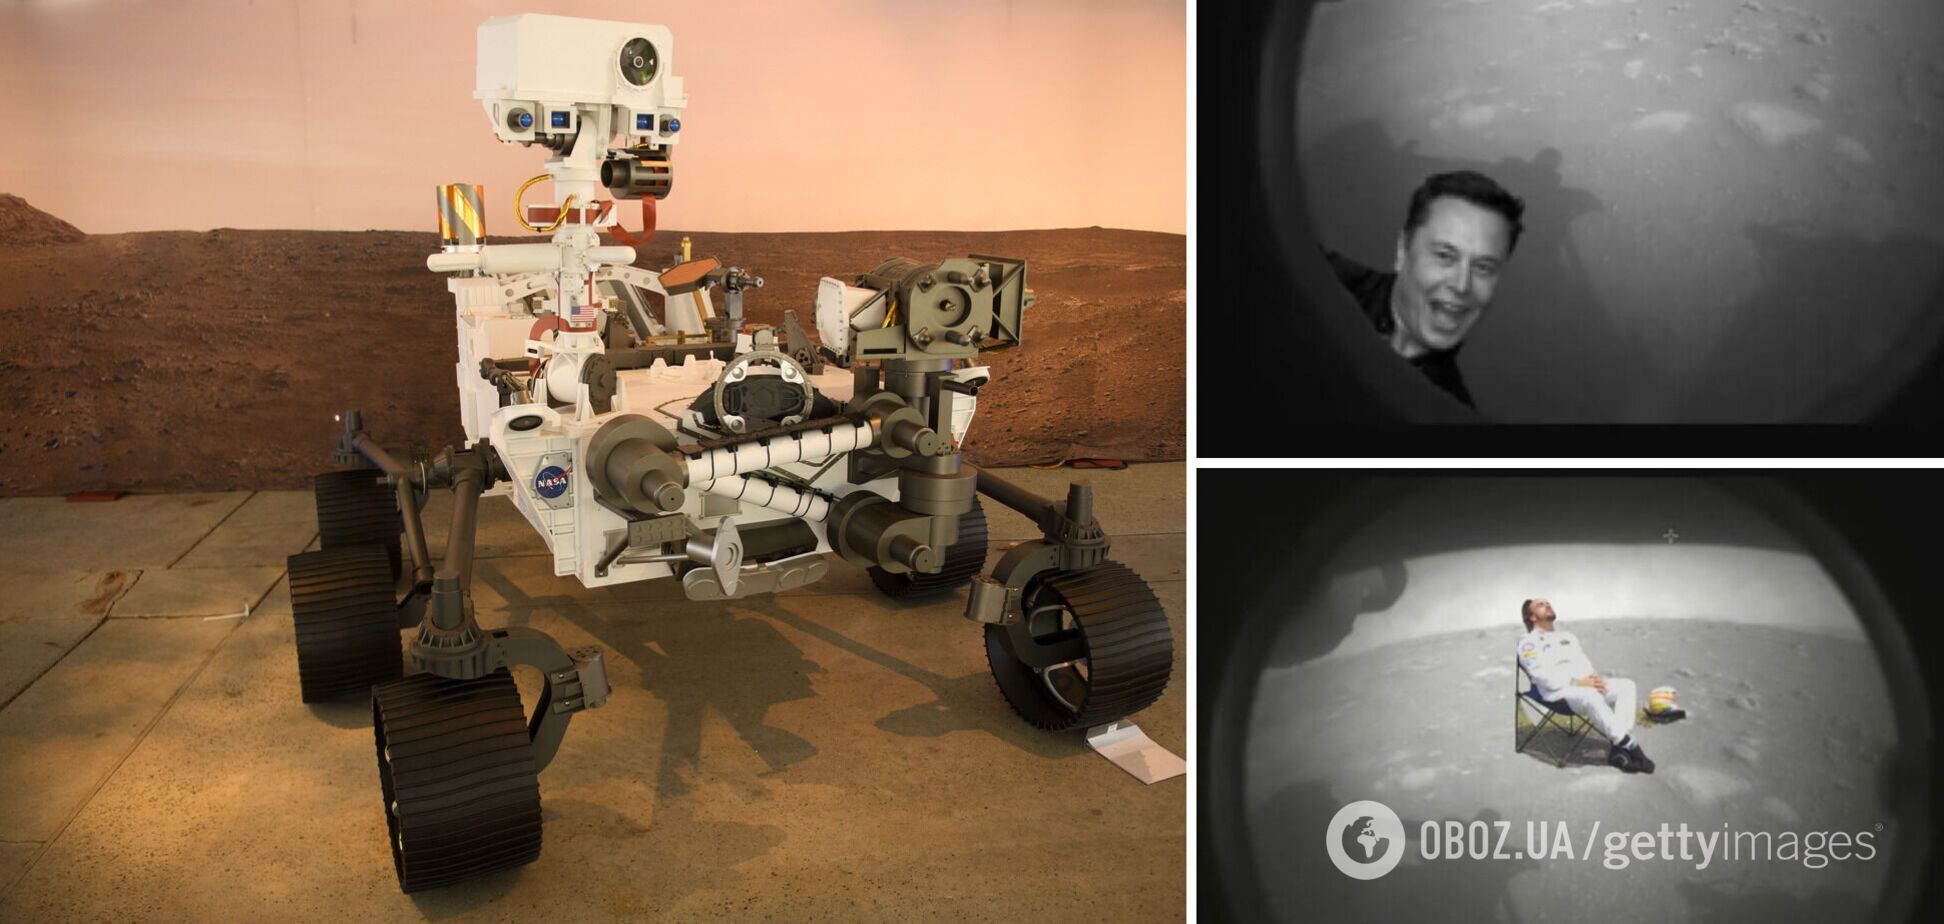 Історичні фото ровера Perseverance із Марсу спровокували флешмоб